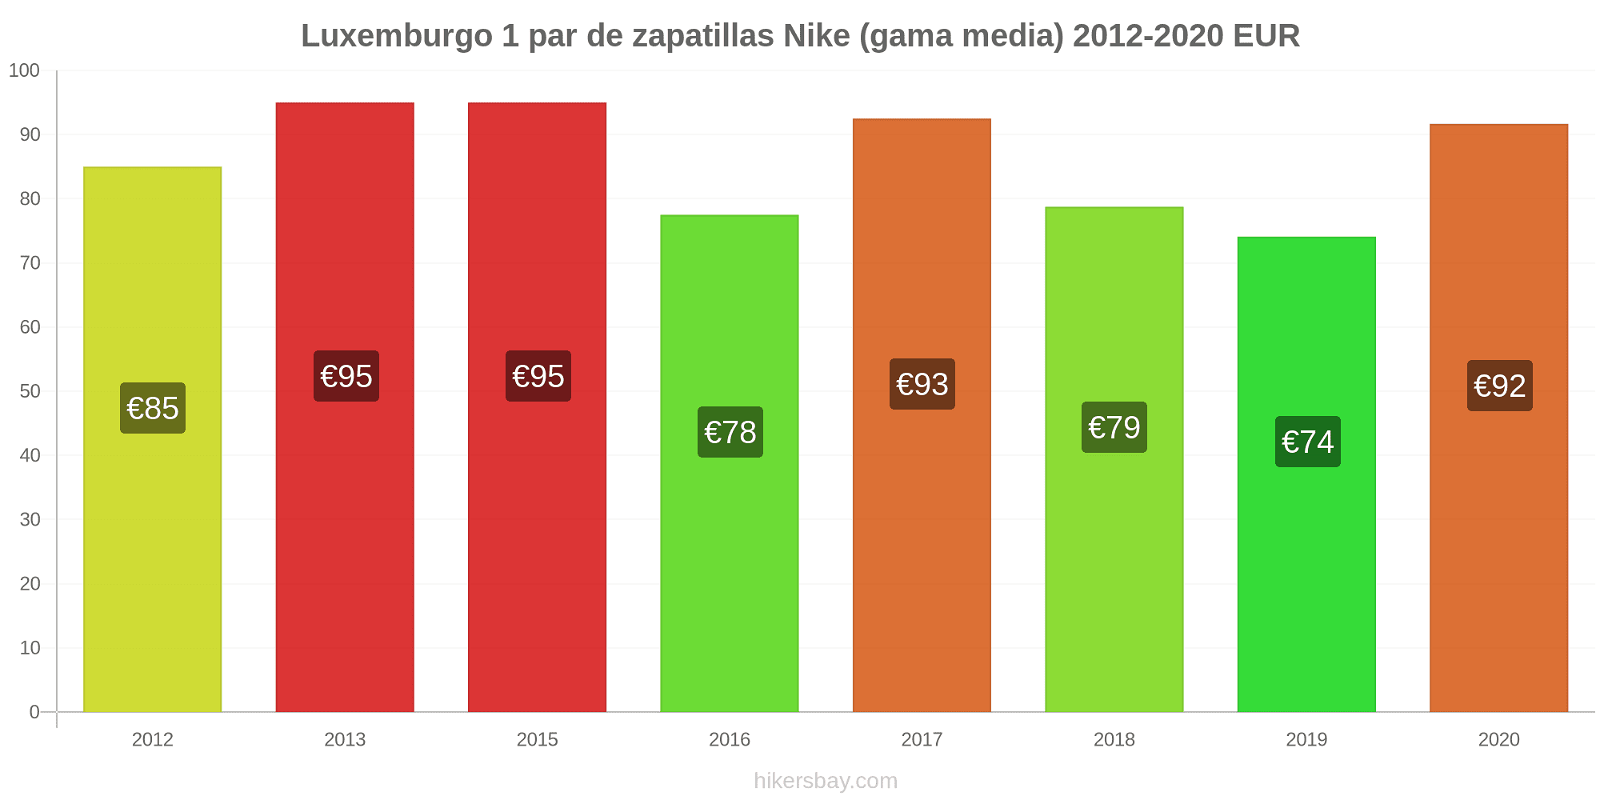 Luxemburgo cambios de precios 1 par de zapatillas Nike (gama media) hikersbay.com